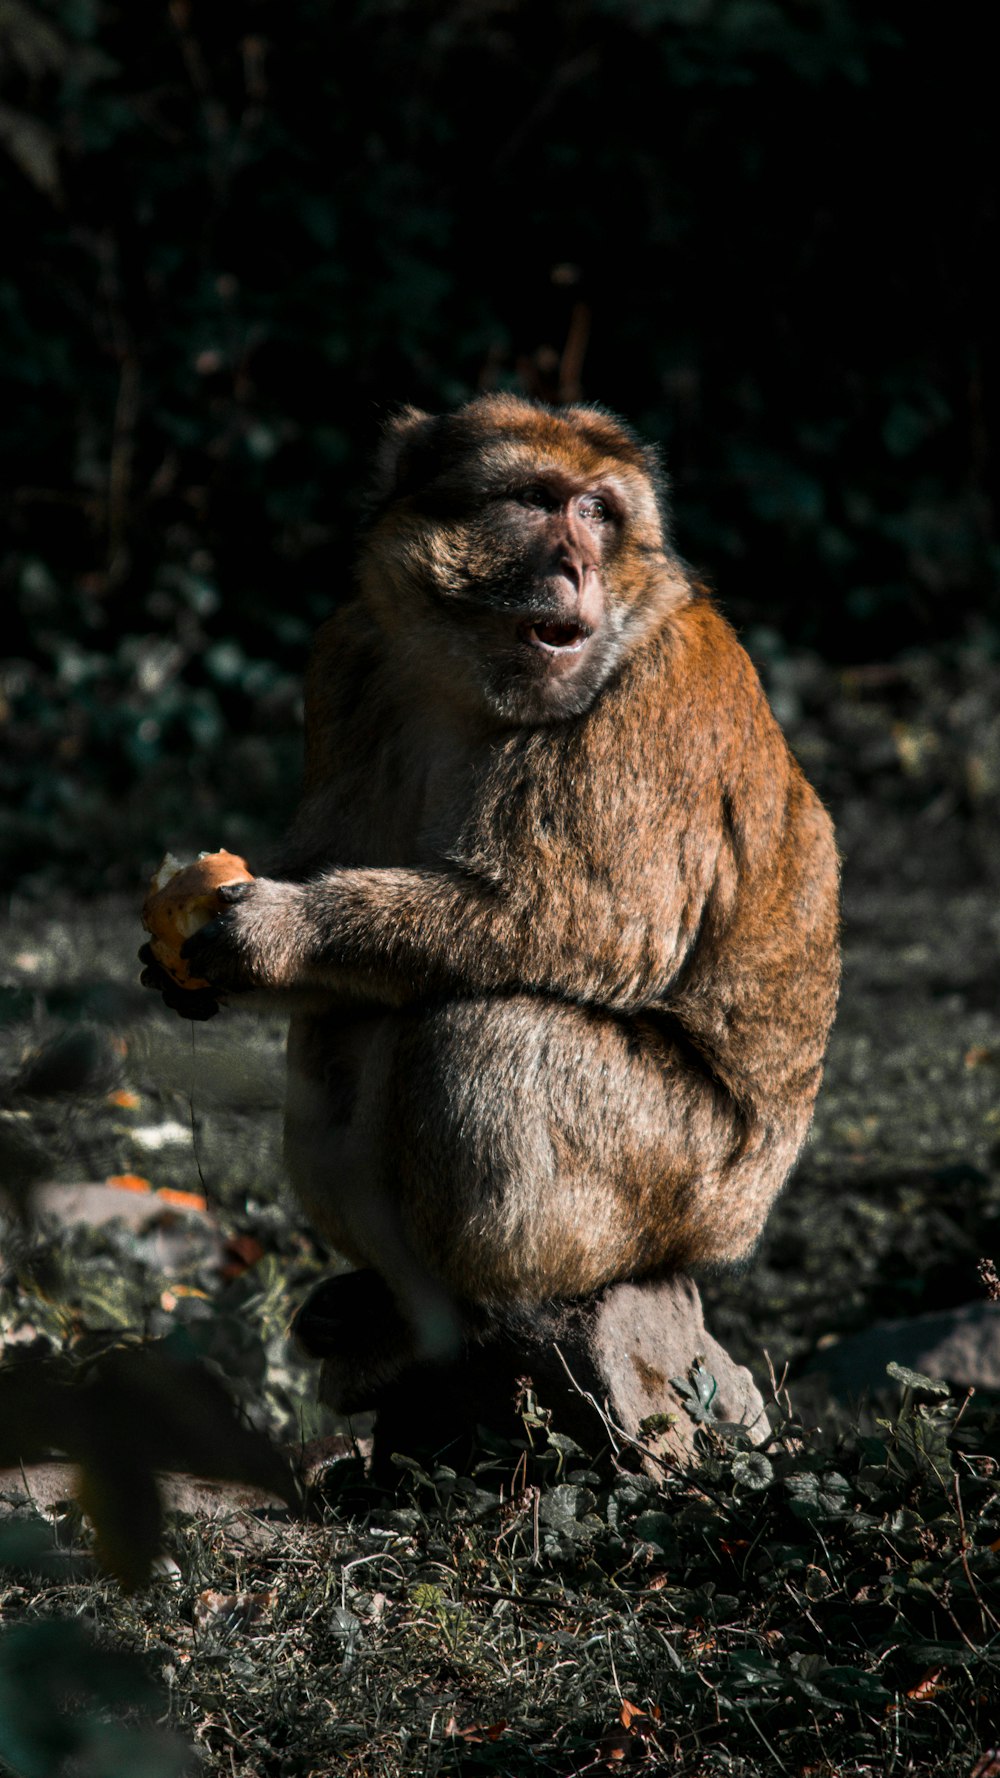 primate sitting on wood slab